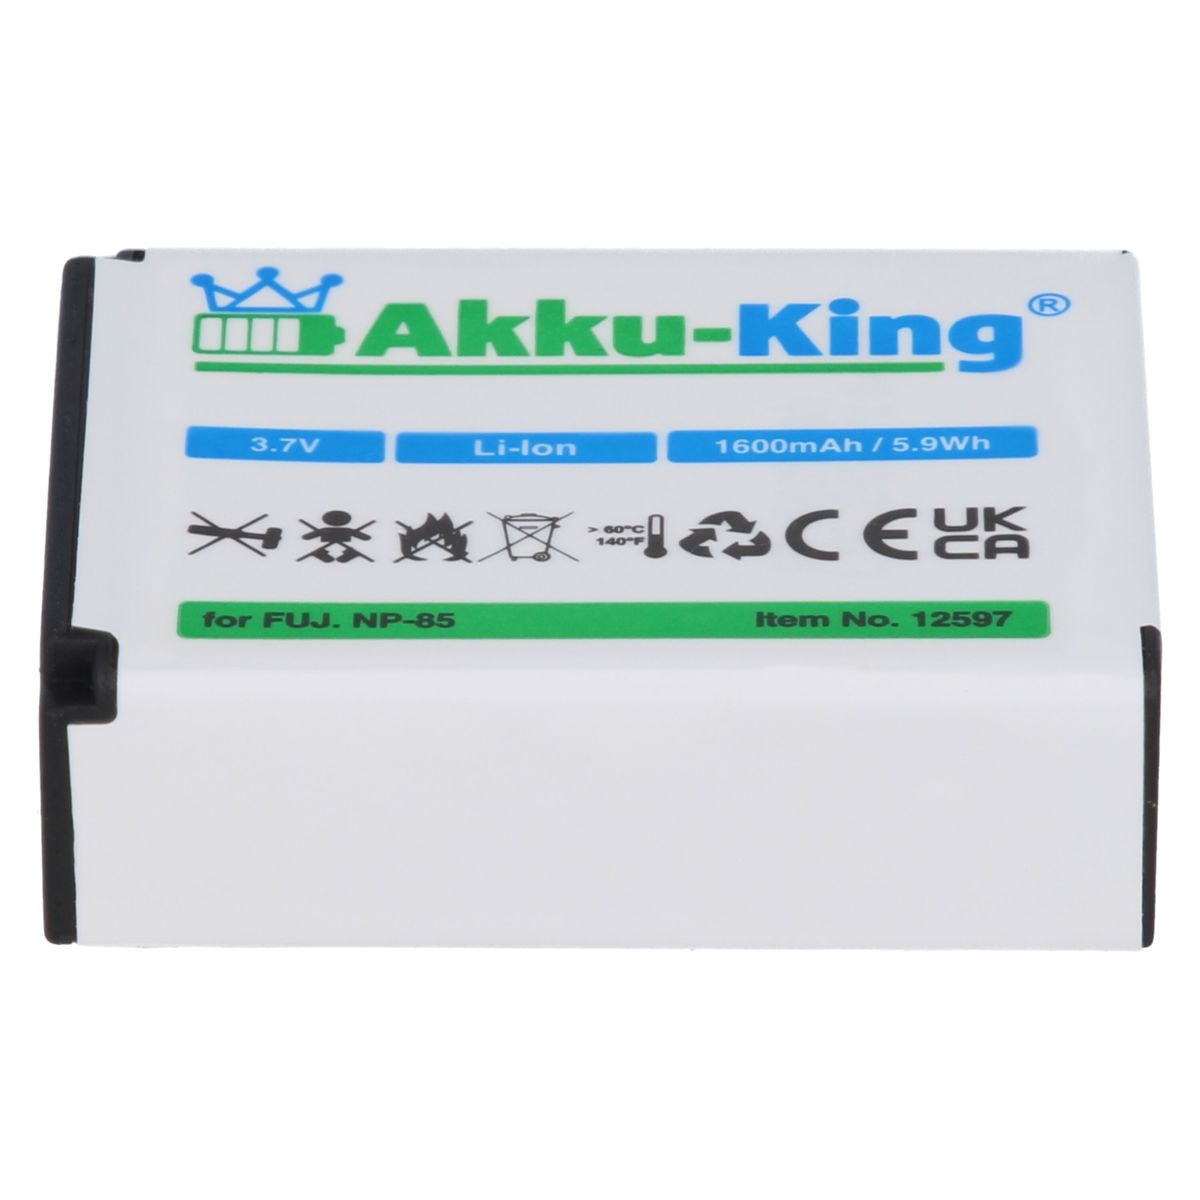 Kamera-Akku, NP-85 3.7 Akku Fuji AKKU-KING Li-Ion 1600mAh Volt, mit kompatibel